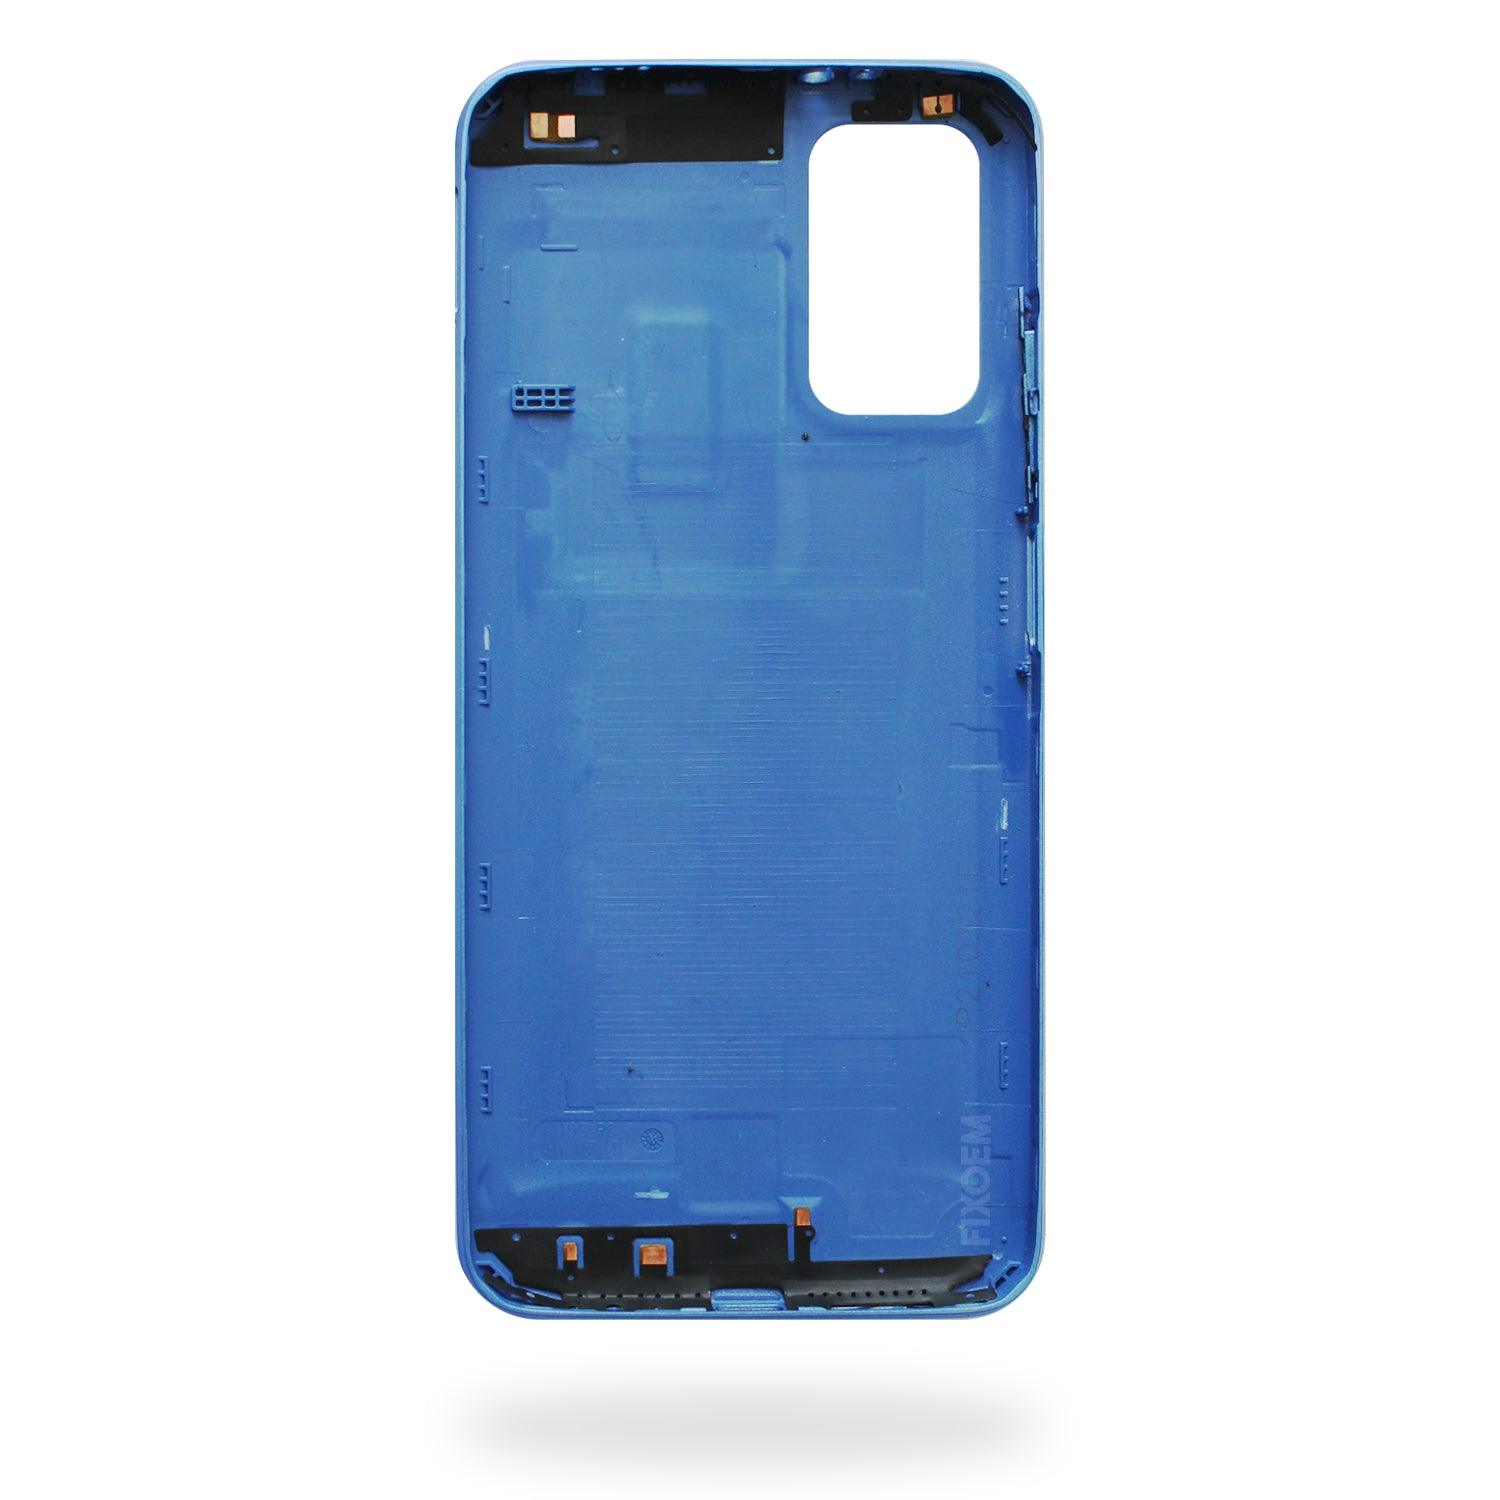 Tapa Trasera Xiaomi Redmi 9T Azul a solo $ 80.00 Refaccion y puestos celulares, refurbish y microelectronica.- FixOEM